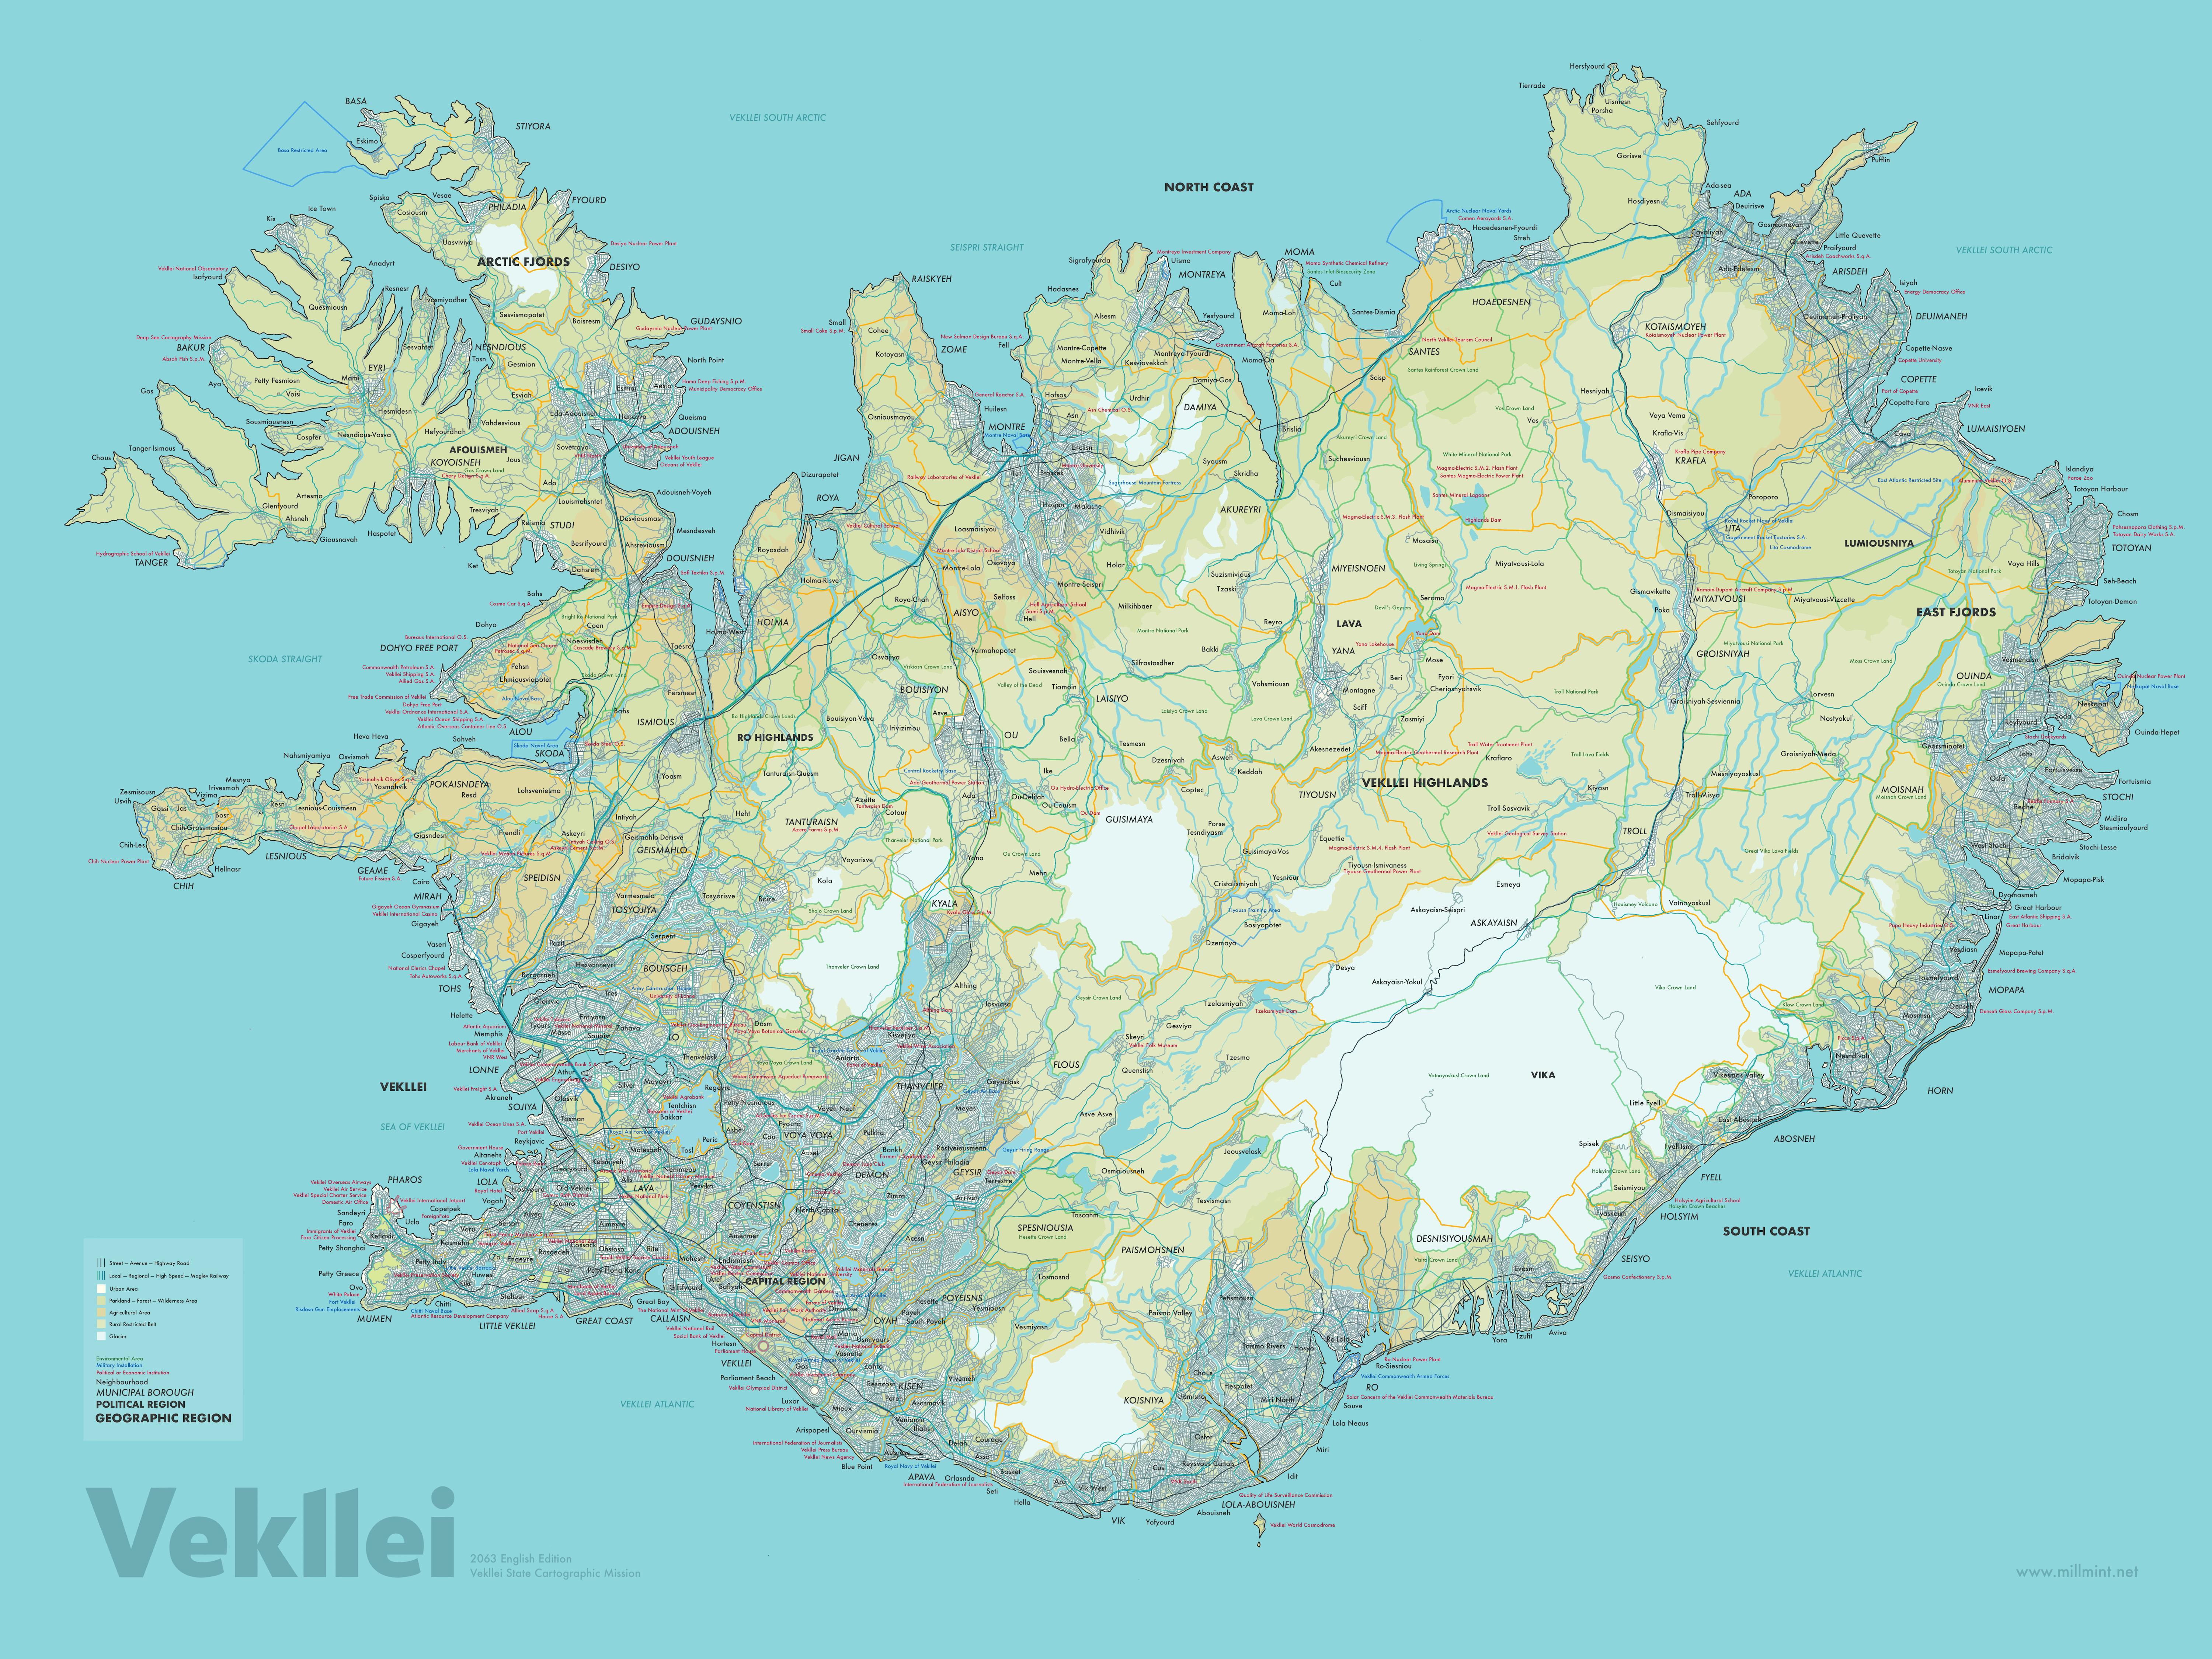 Map of Vekllei